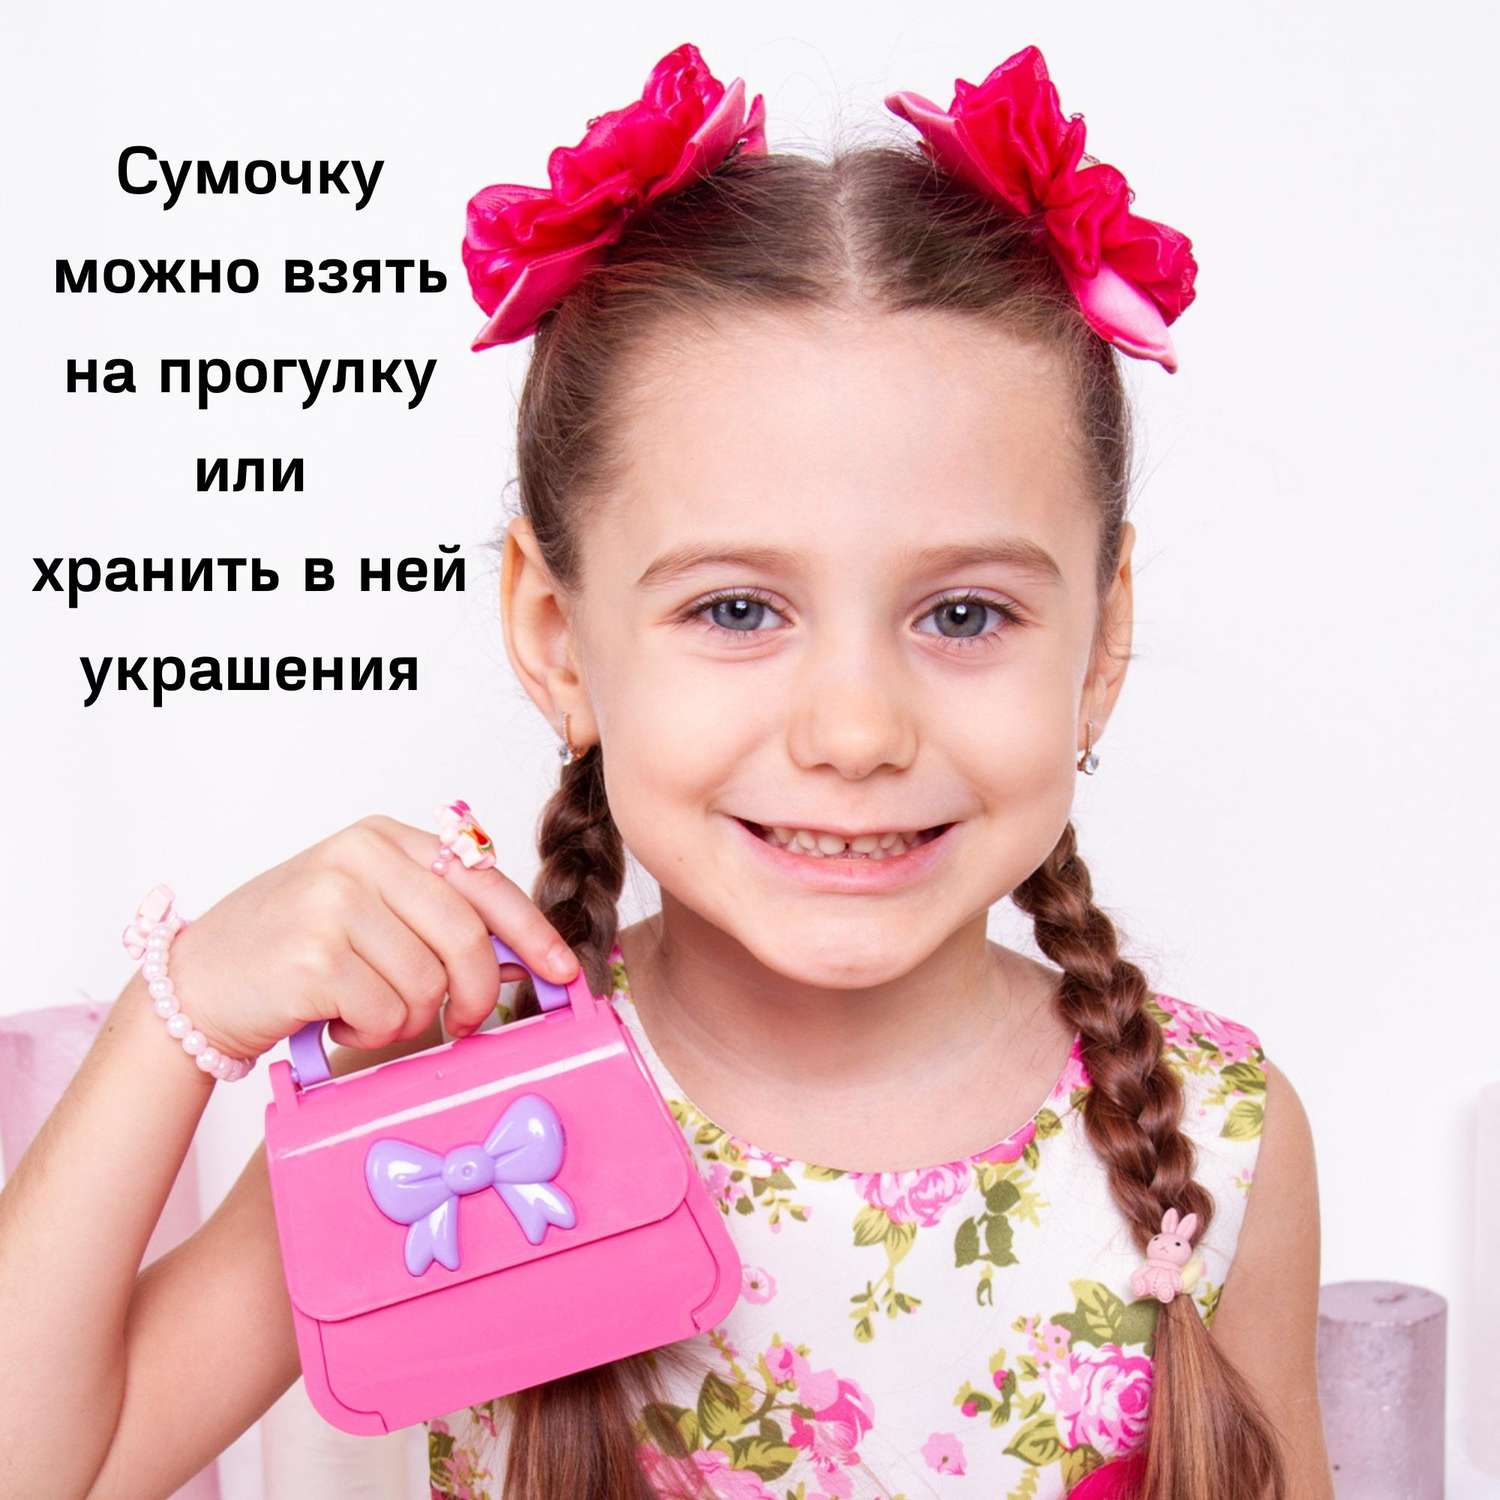 Детские ювелирные украшения - Купить ювелирные украшения для детей в Украине ≡ Pandora